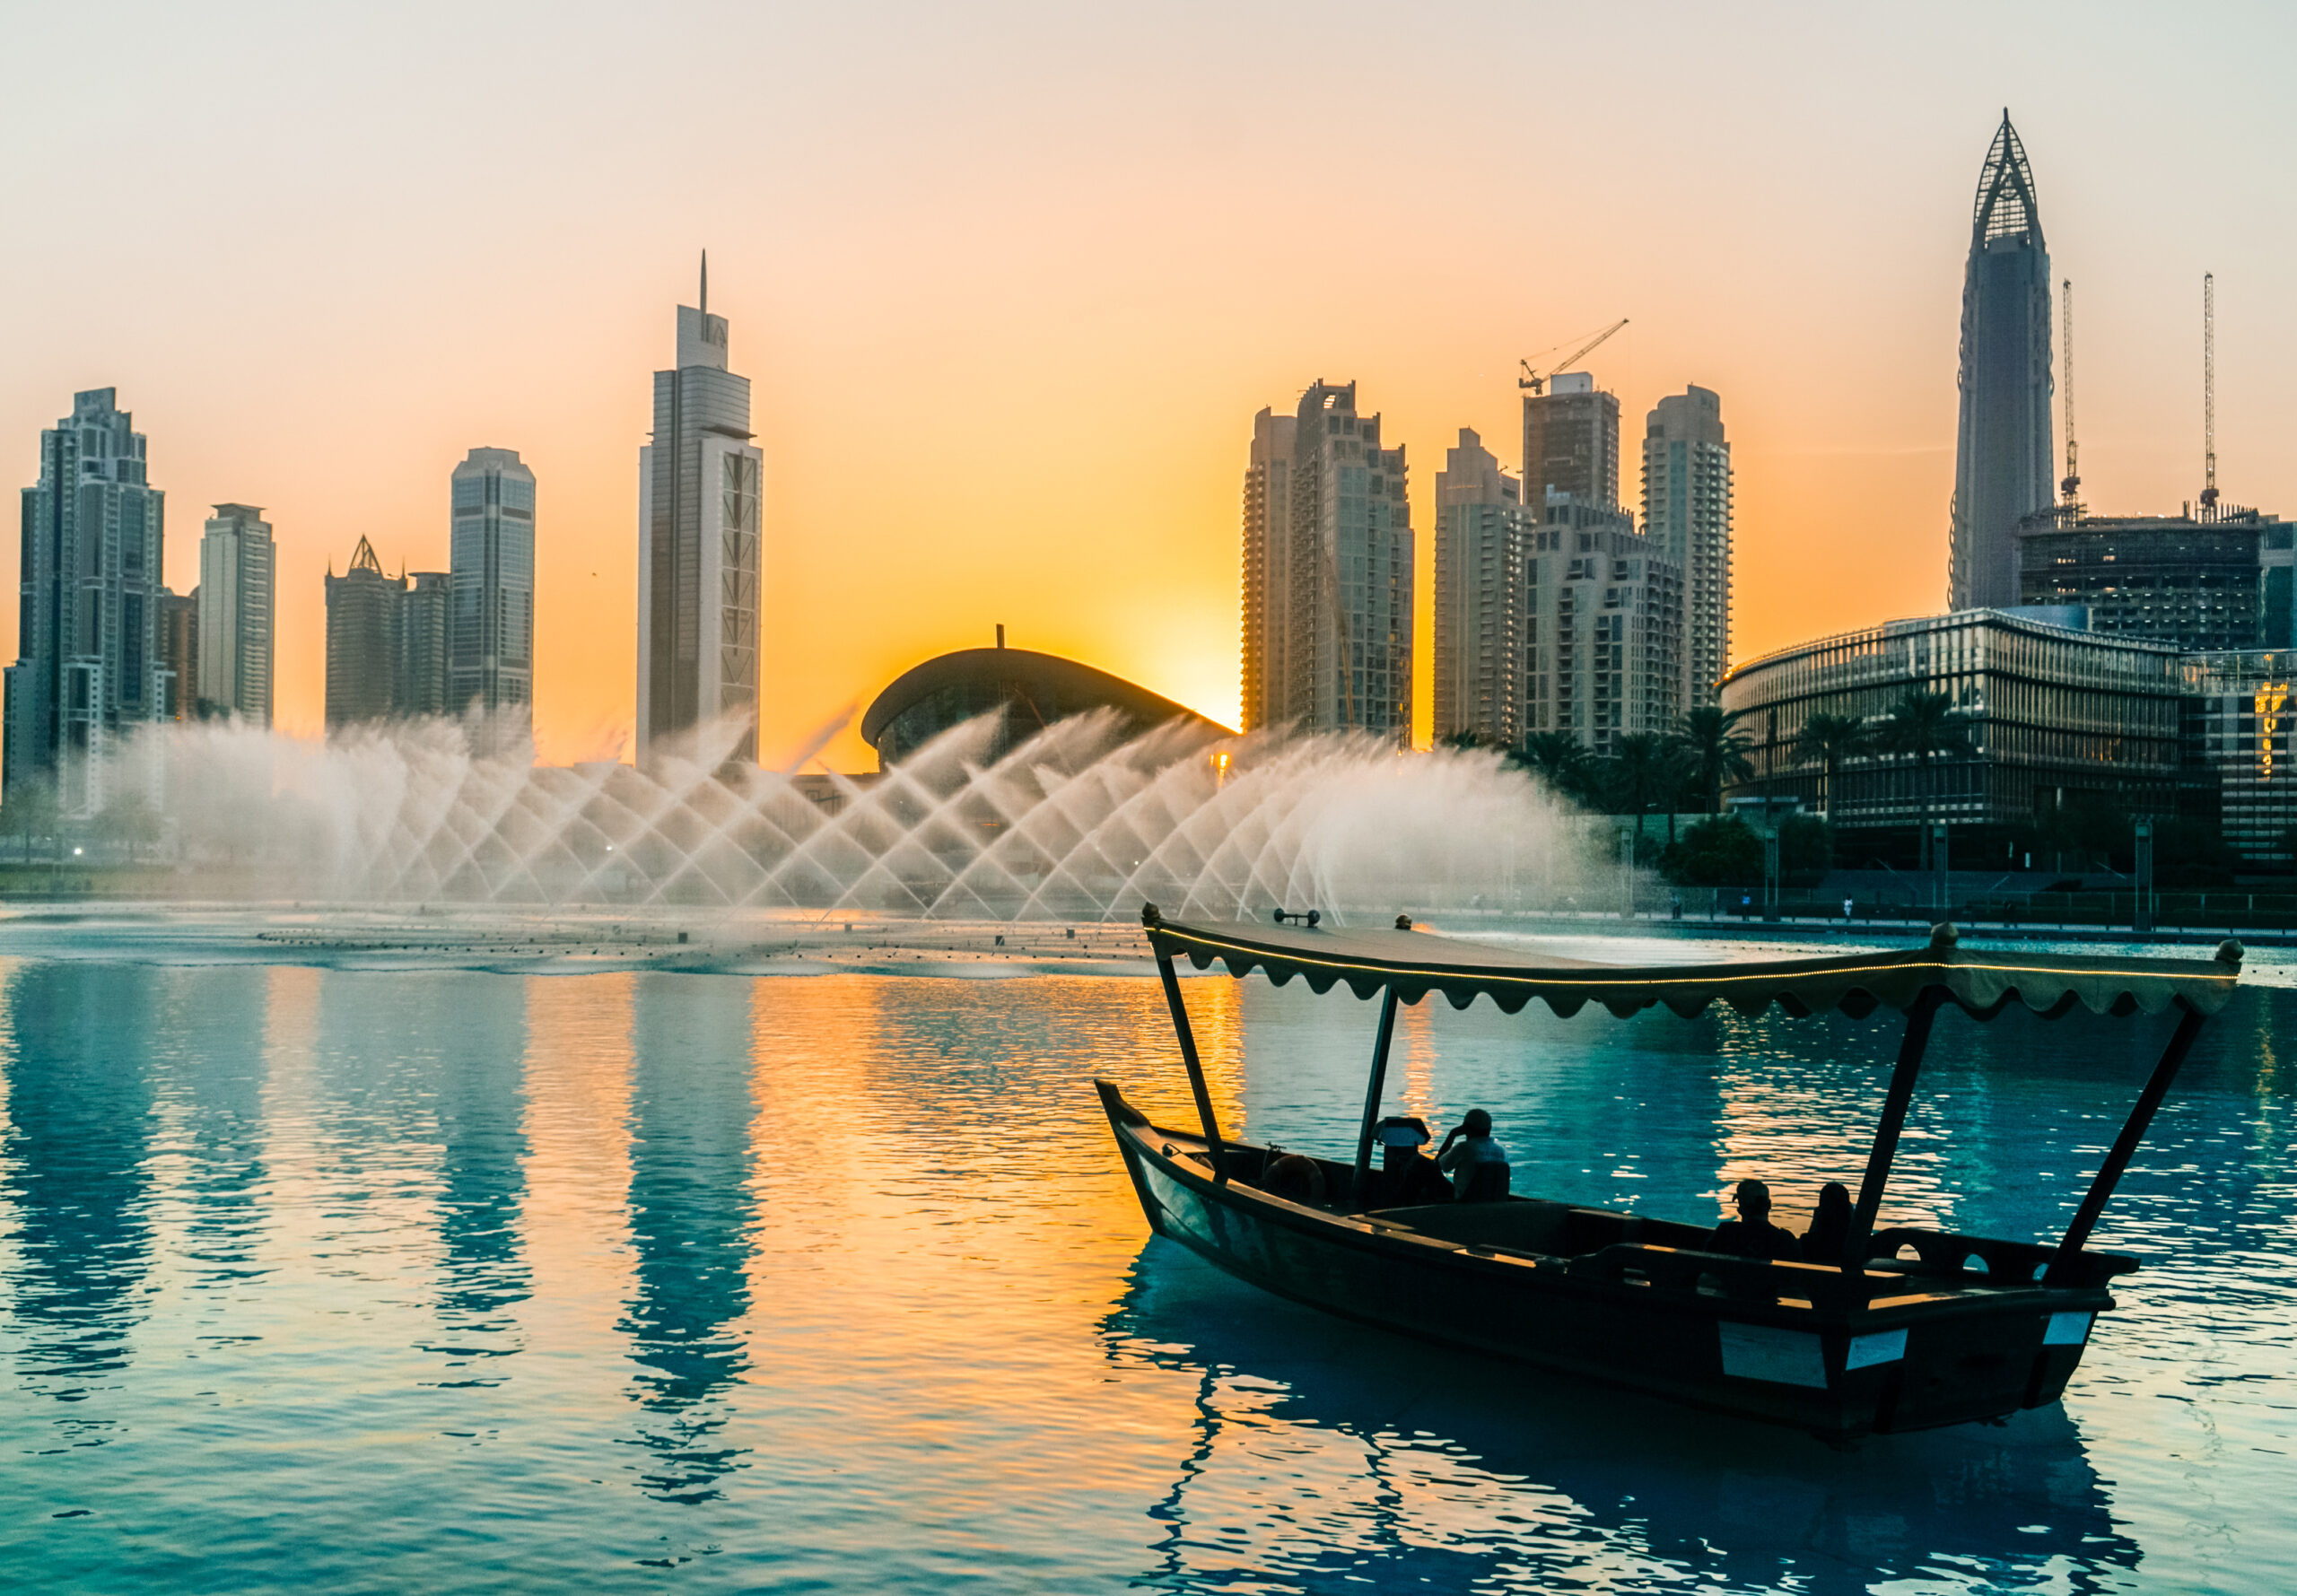 Dubai Fountain - Lake Boat ride